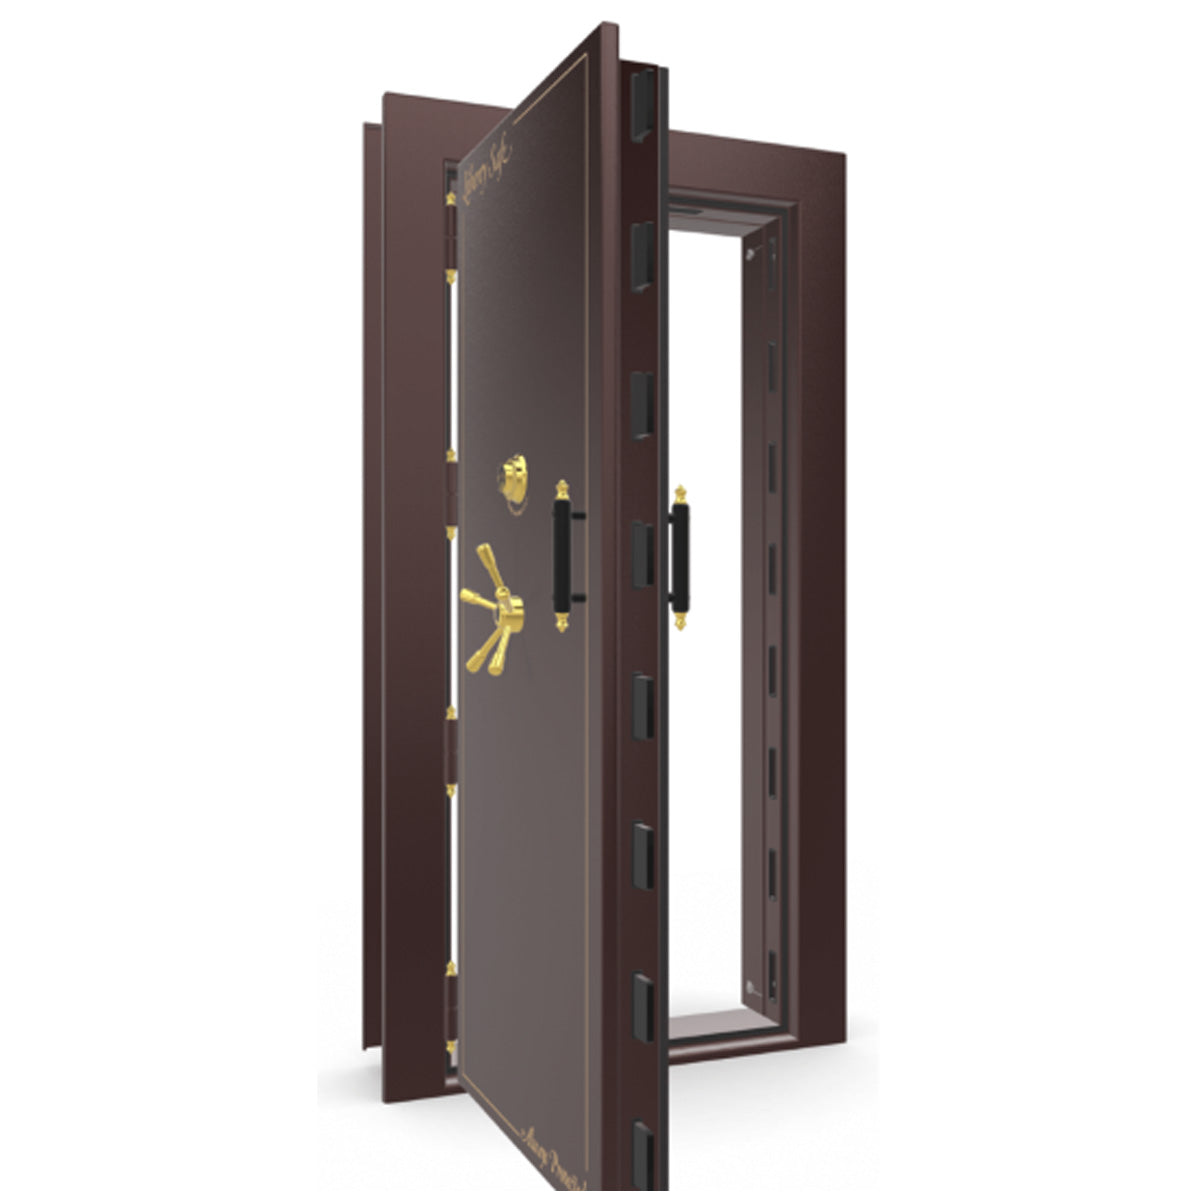 The Beast Vault Door in Burgundy Gloss with Brass Electronic Lock, Left Outswing, door open.